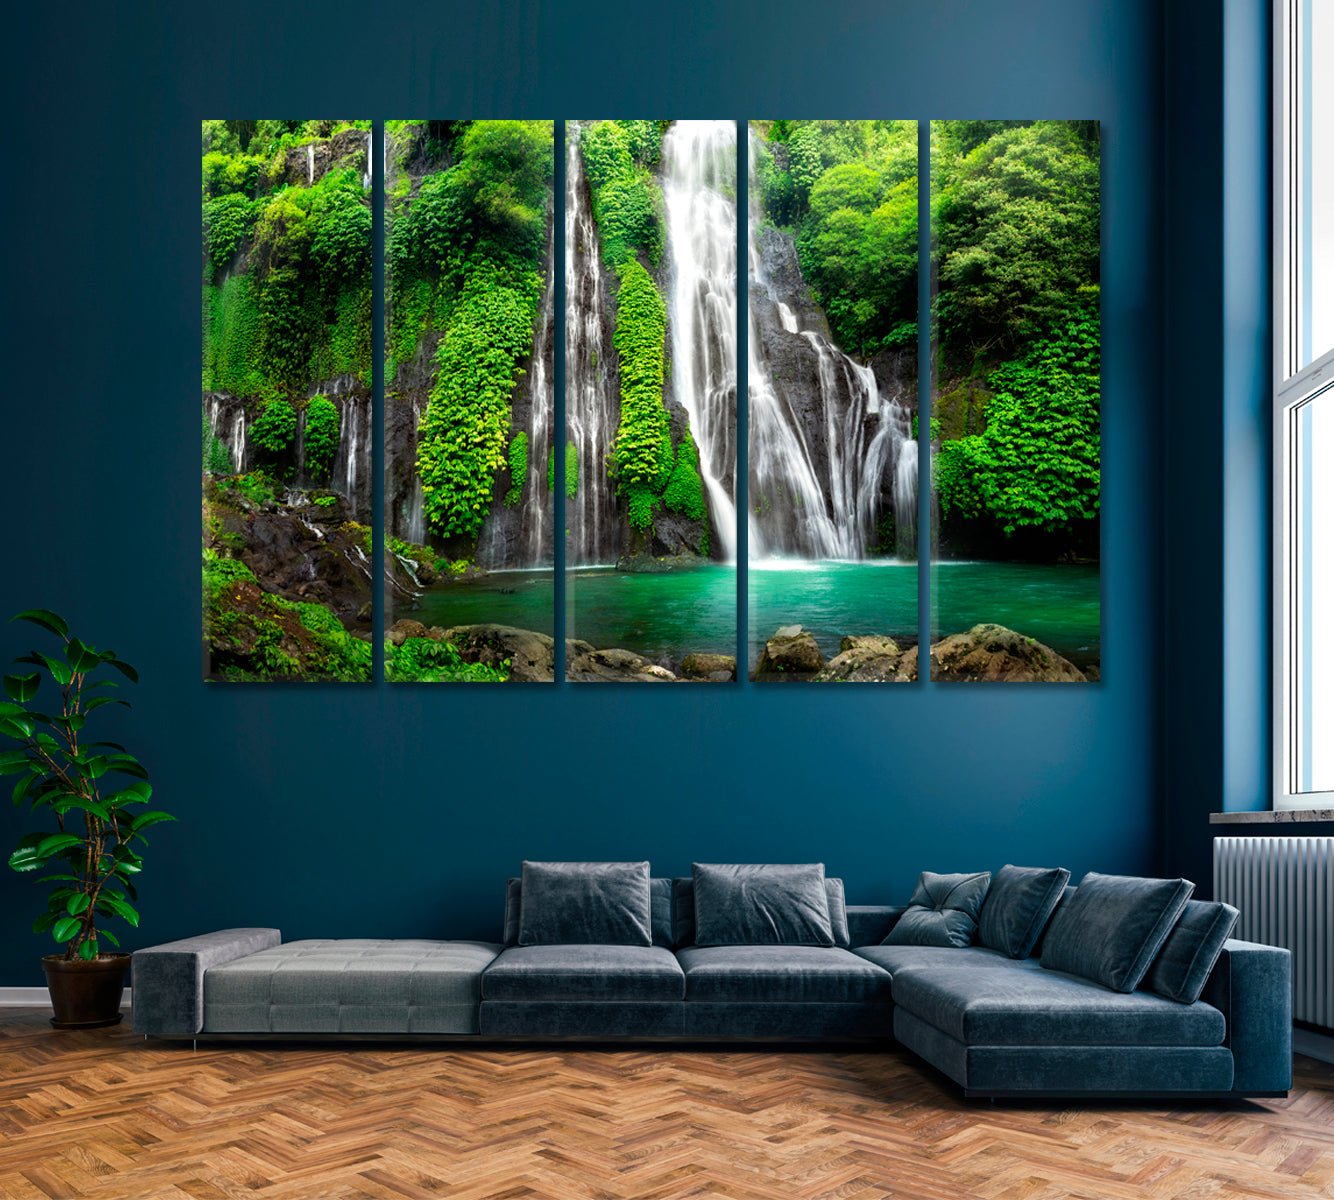 Banyumala Twin Waterfall Bali Canvas Print ArtLexy 5 Panels 36"x24" inches 